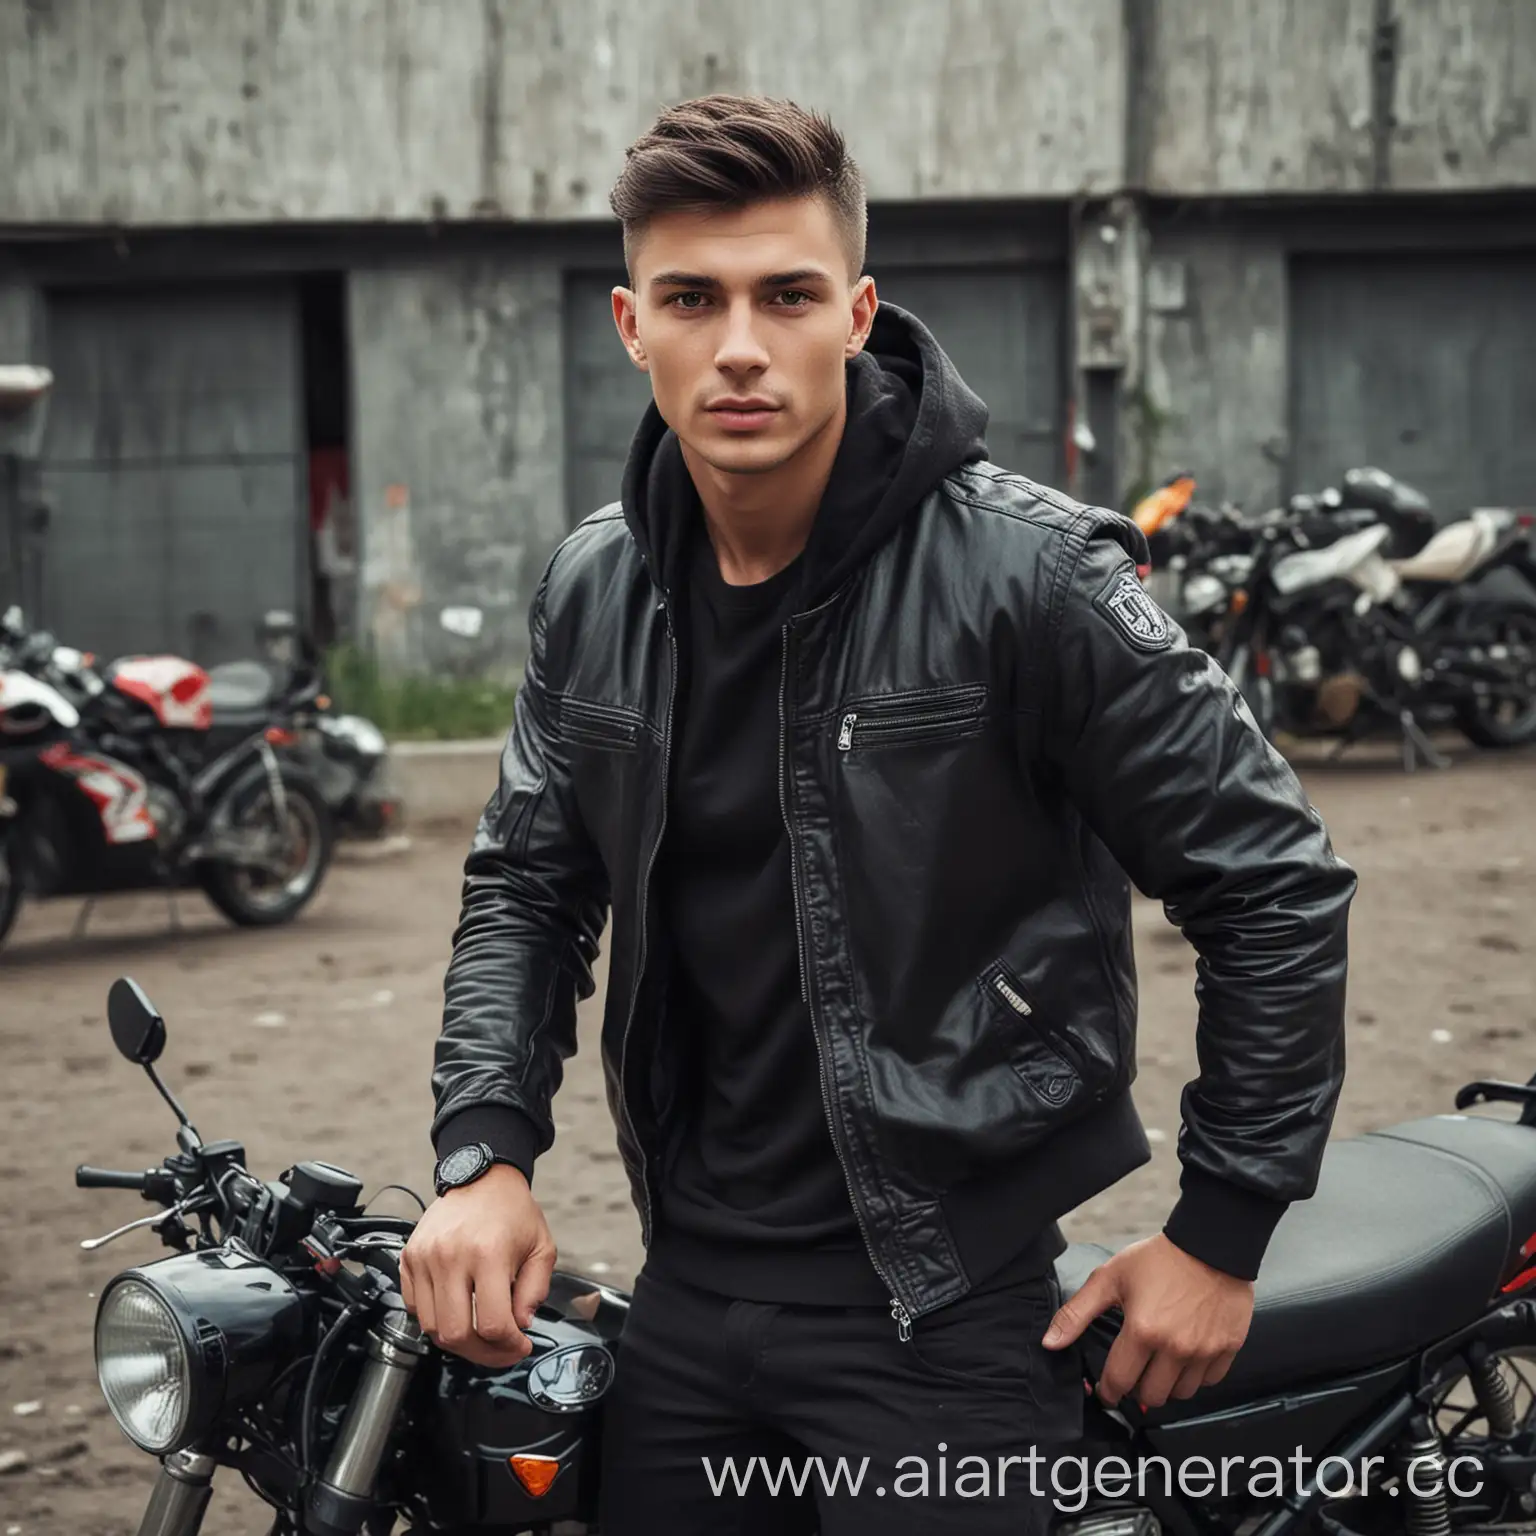 Игорь Савельев, парень 25-26 лет, спортивный, темноволосый, любит машины и мотоциклы 